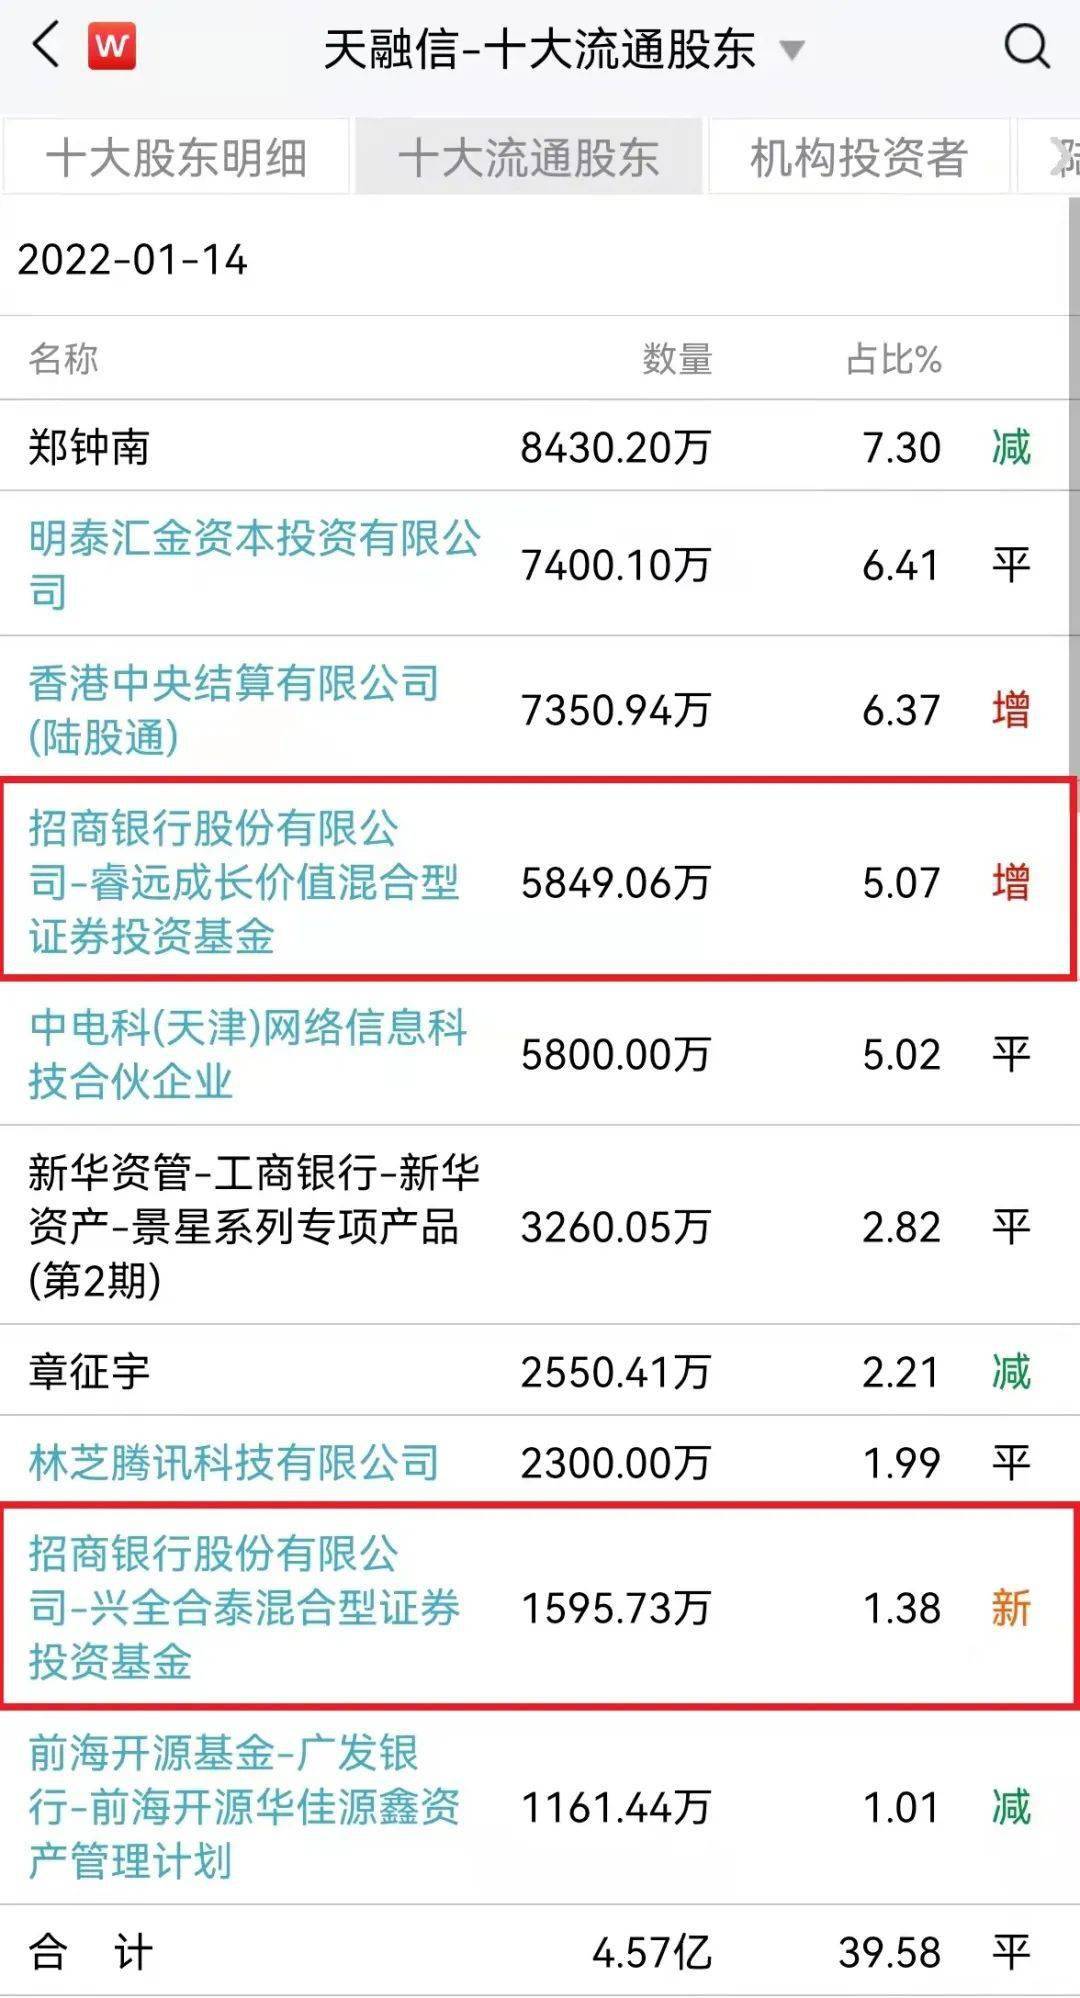 唐晓斌新进安利股份前十大流通股东 过去一年股价涨超90%